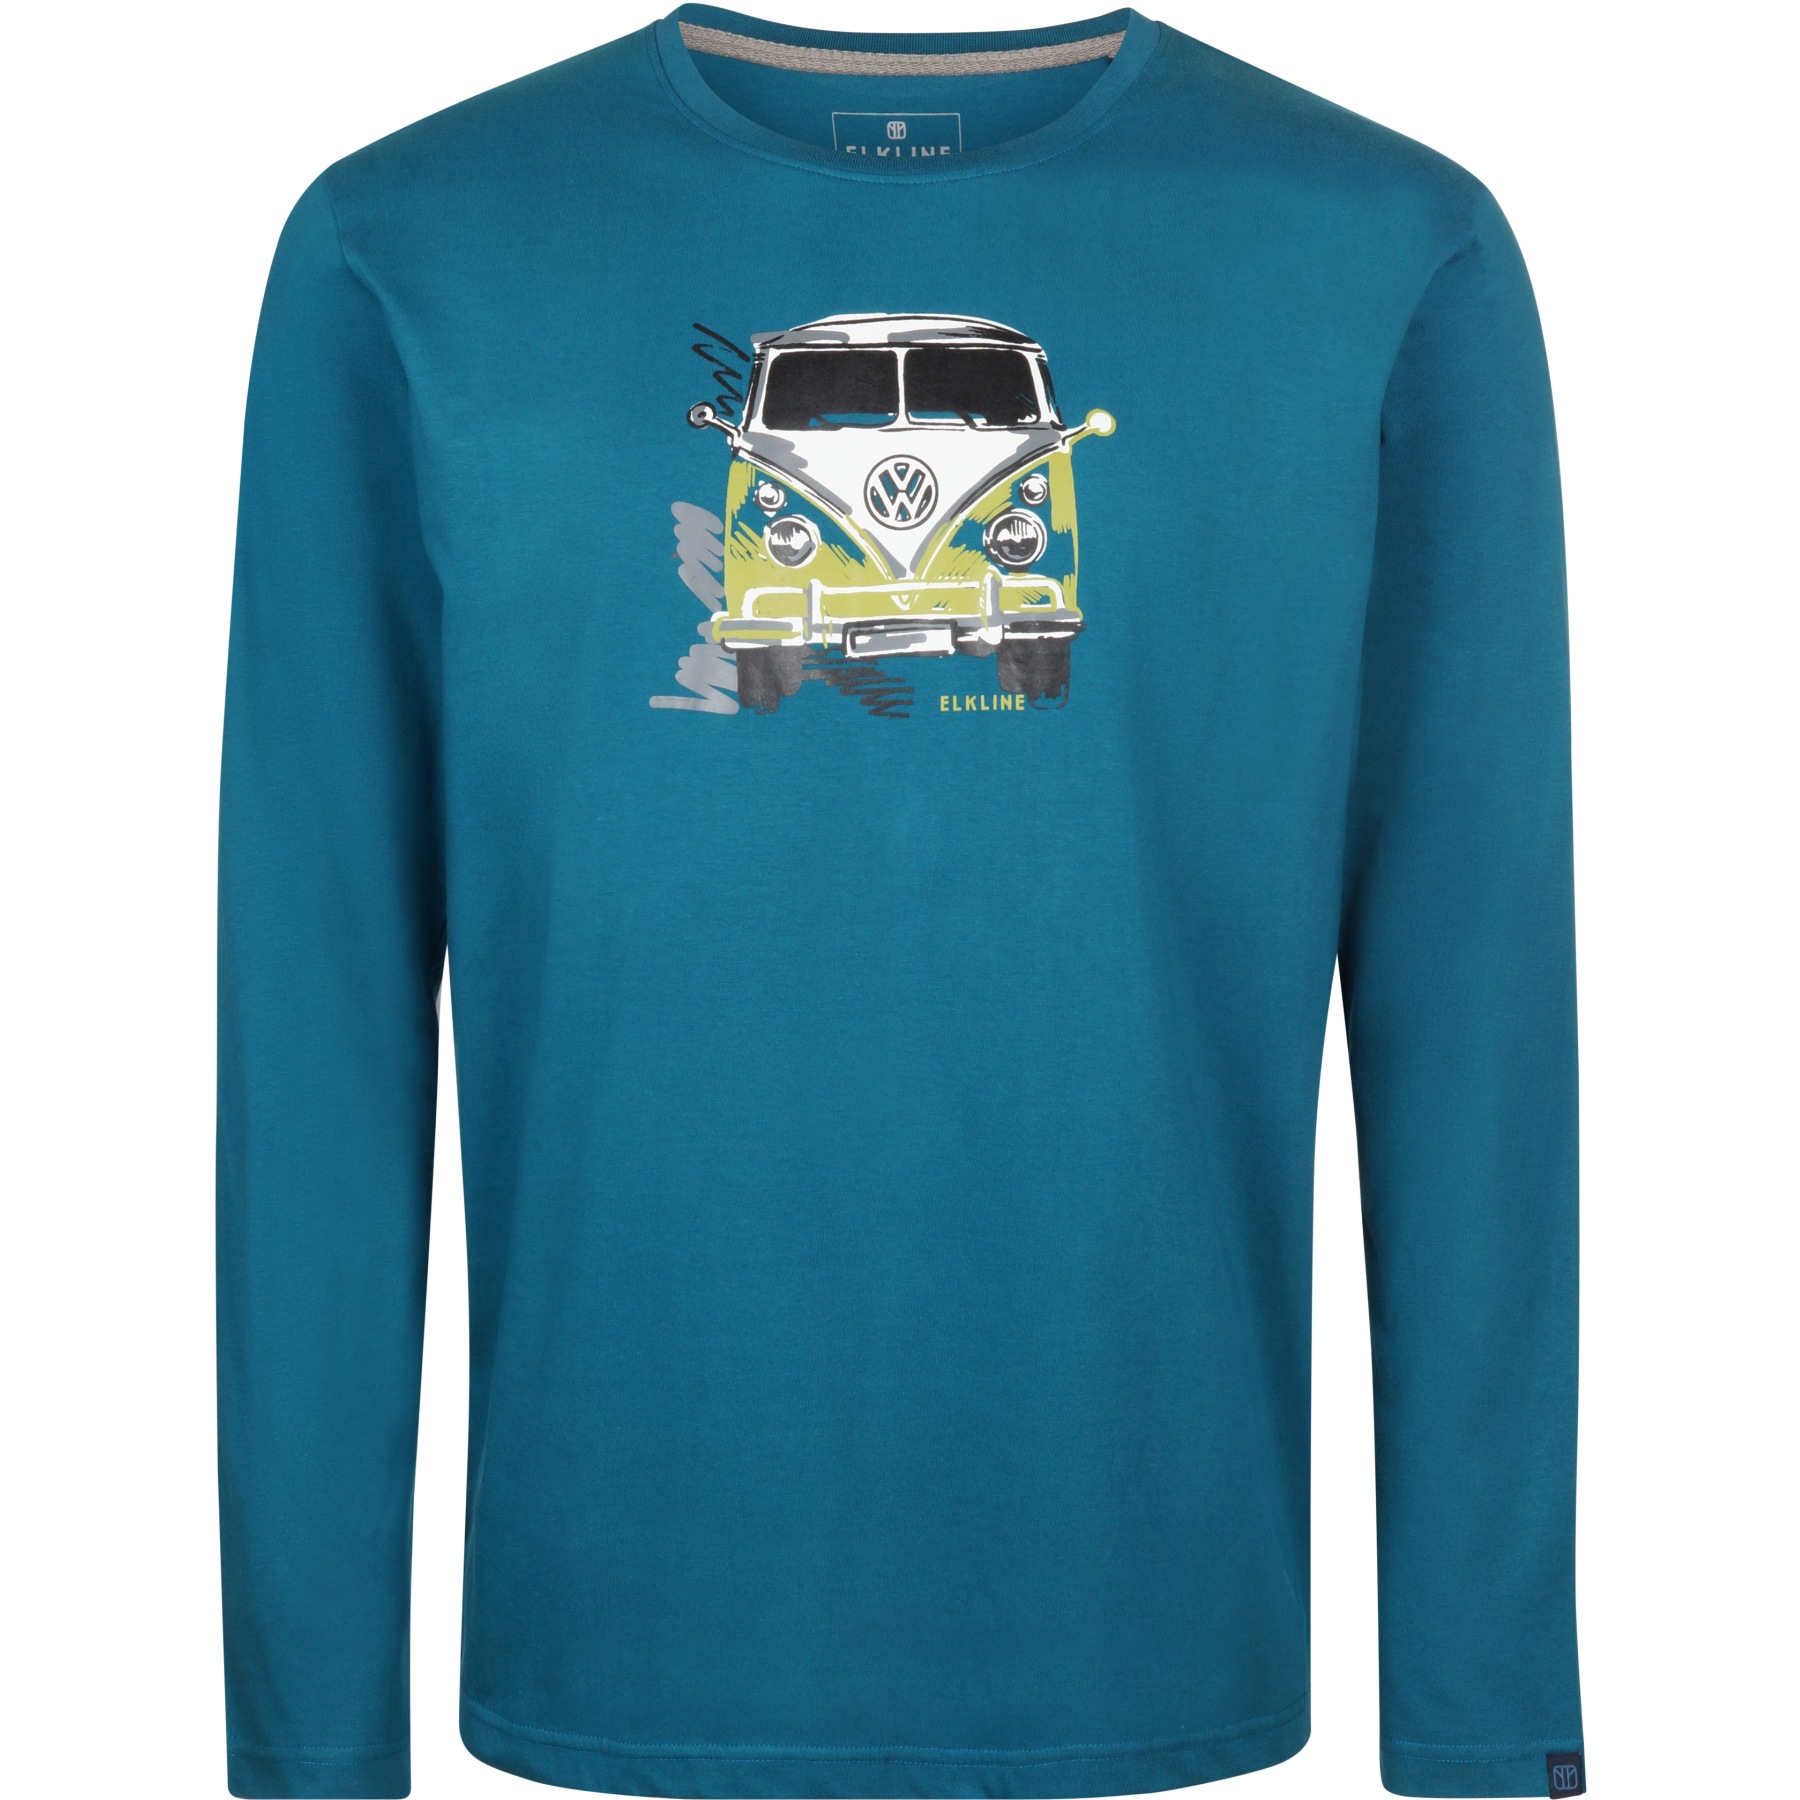 Productfoto van Elkline LANGE DABEI Shirt met Lange Mouwen Heren - Gelicenseerd door VW - blue coral